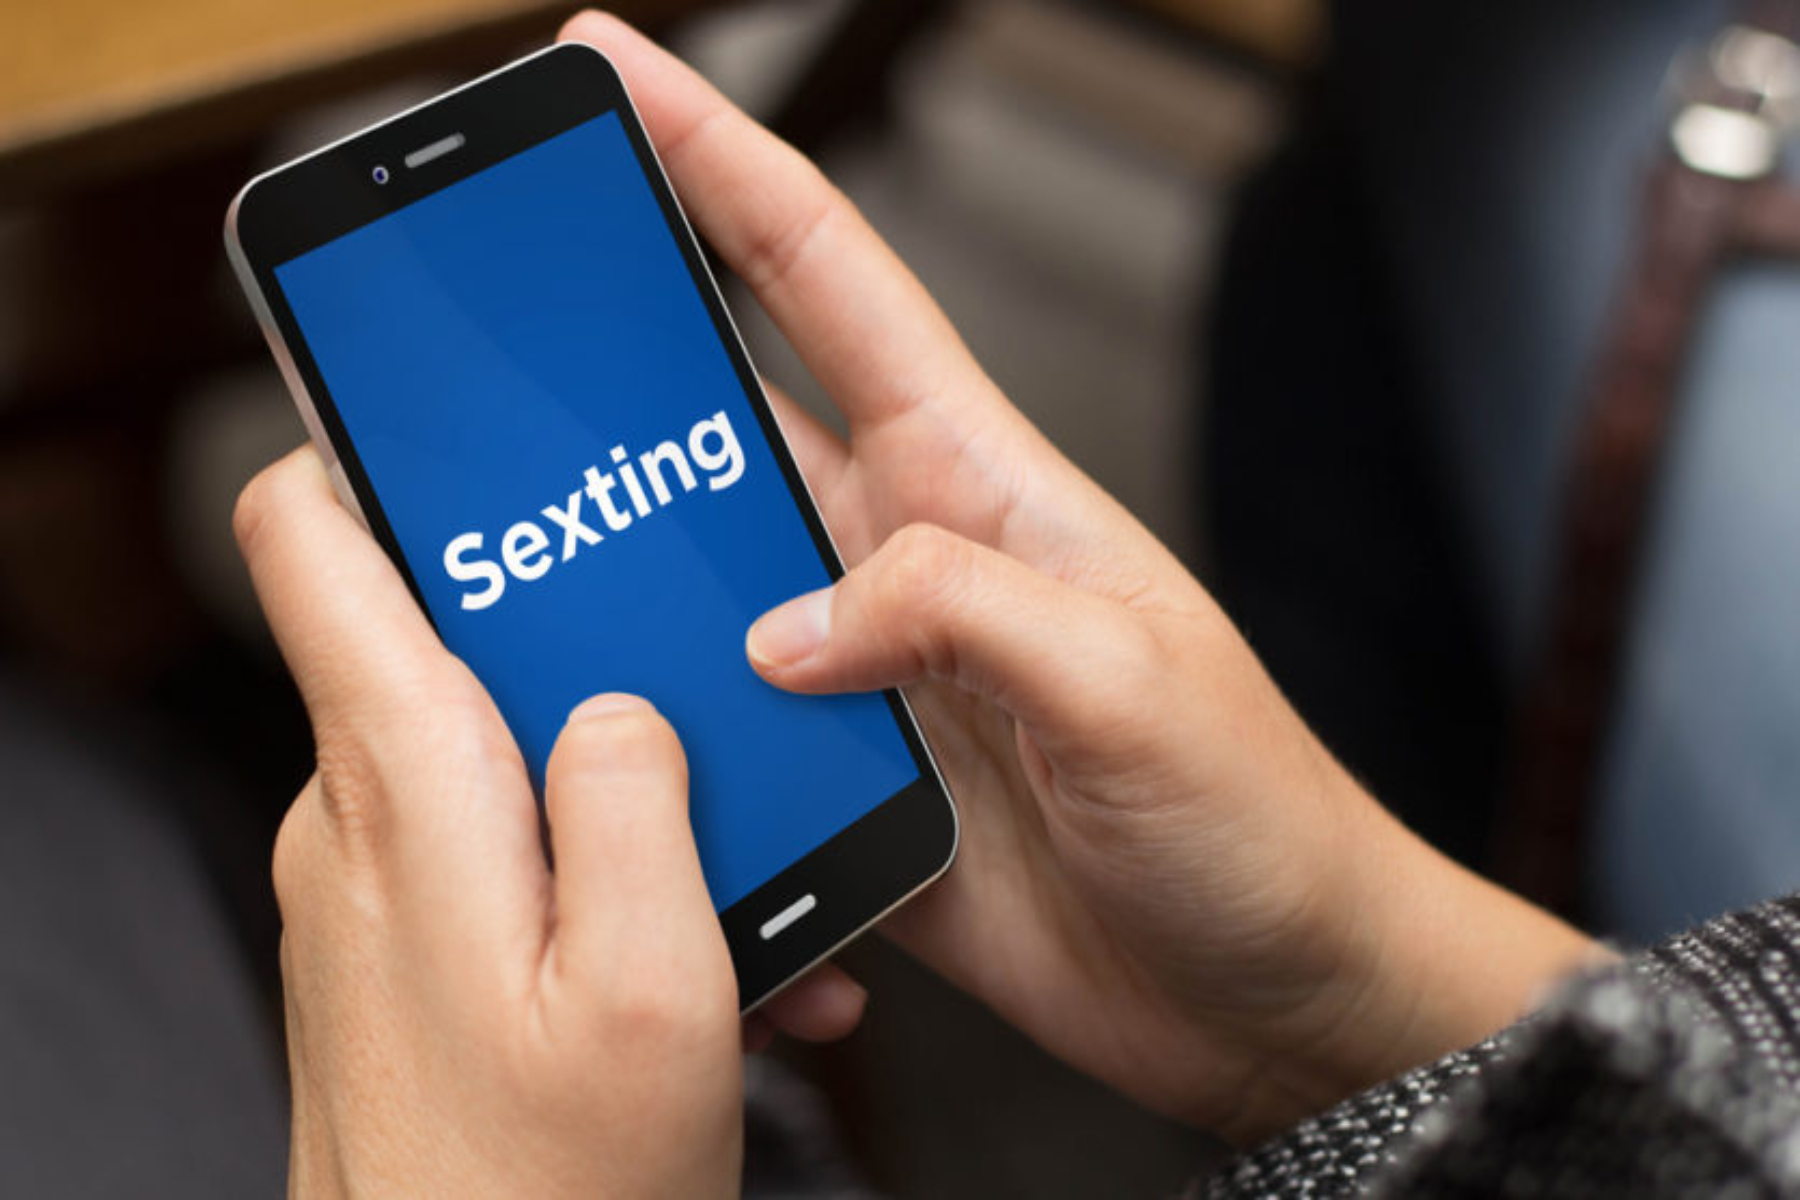 Σεξουαλική υγεία sexting: Πώς οι γονείς αντιμετωπίζουν το sexting των εφήβων